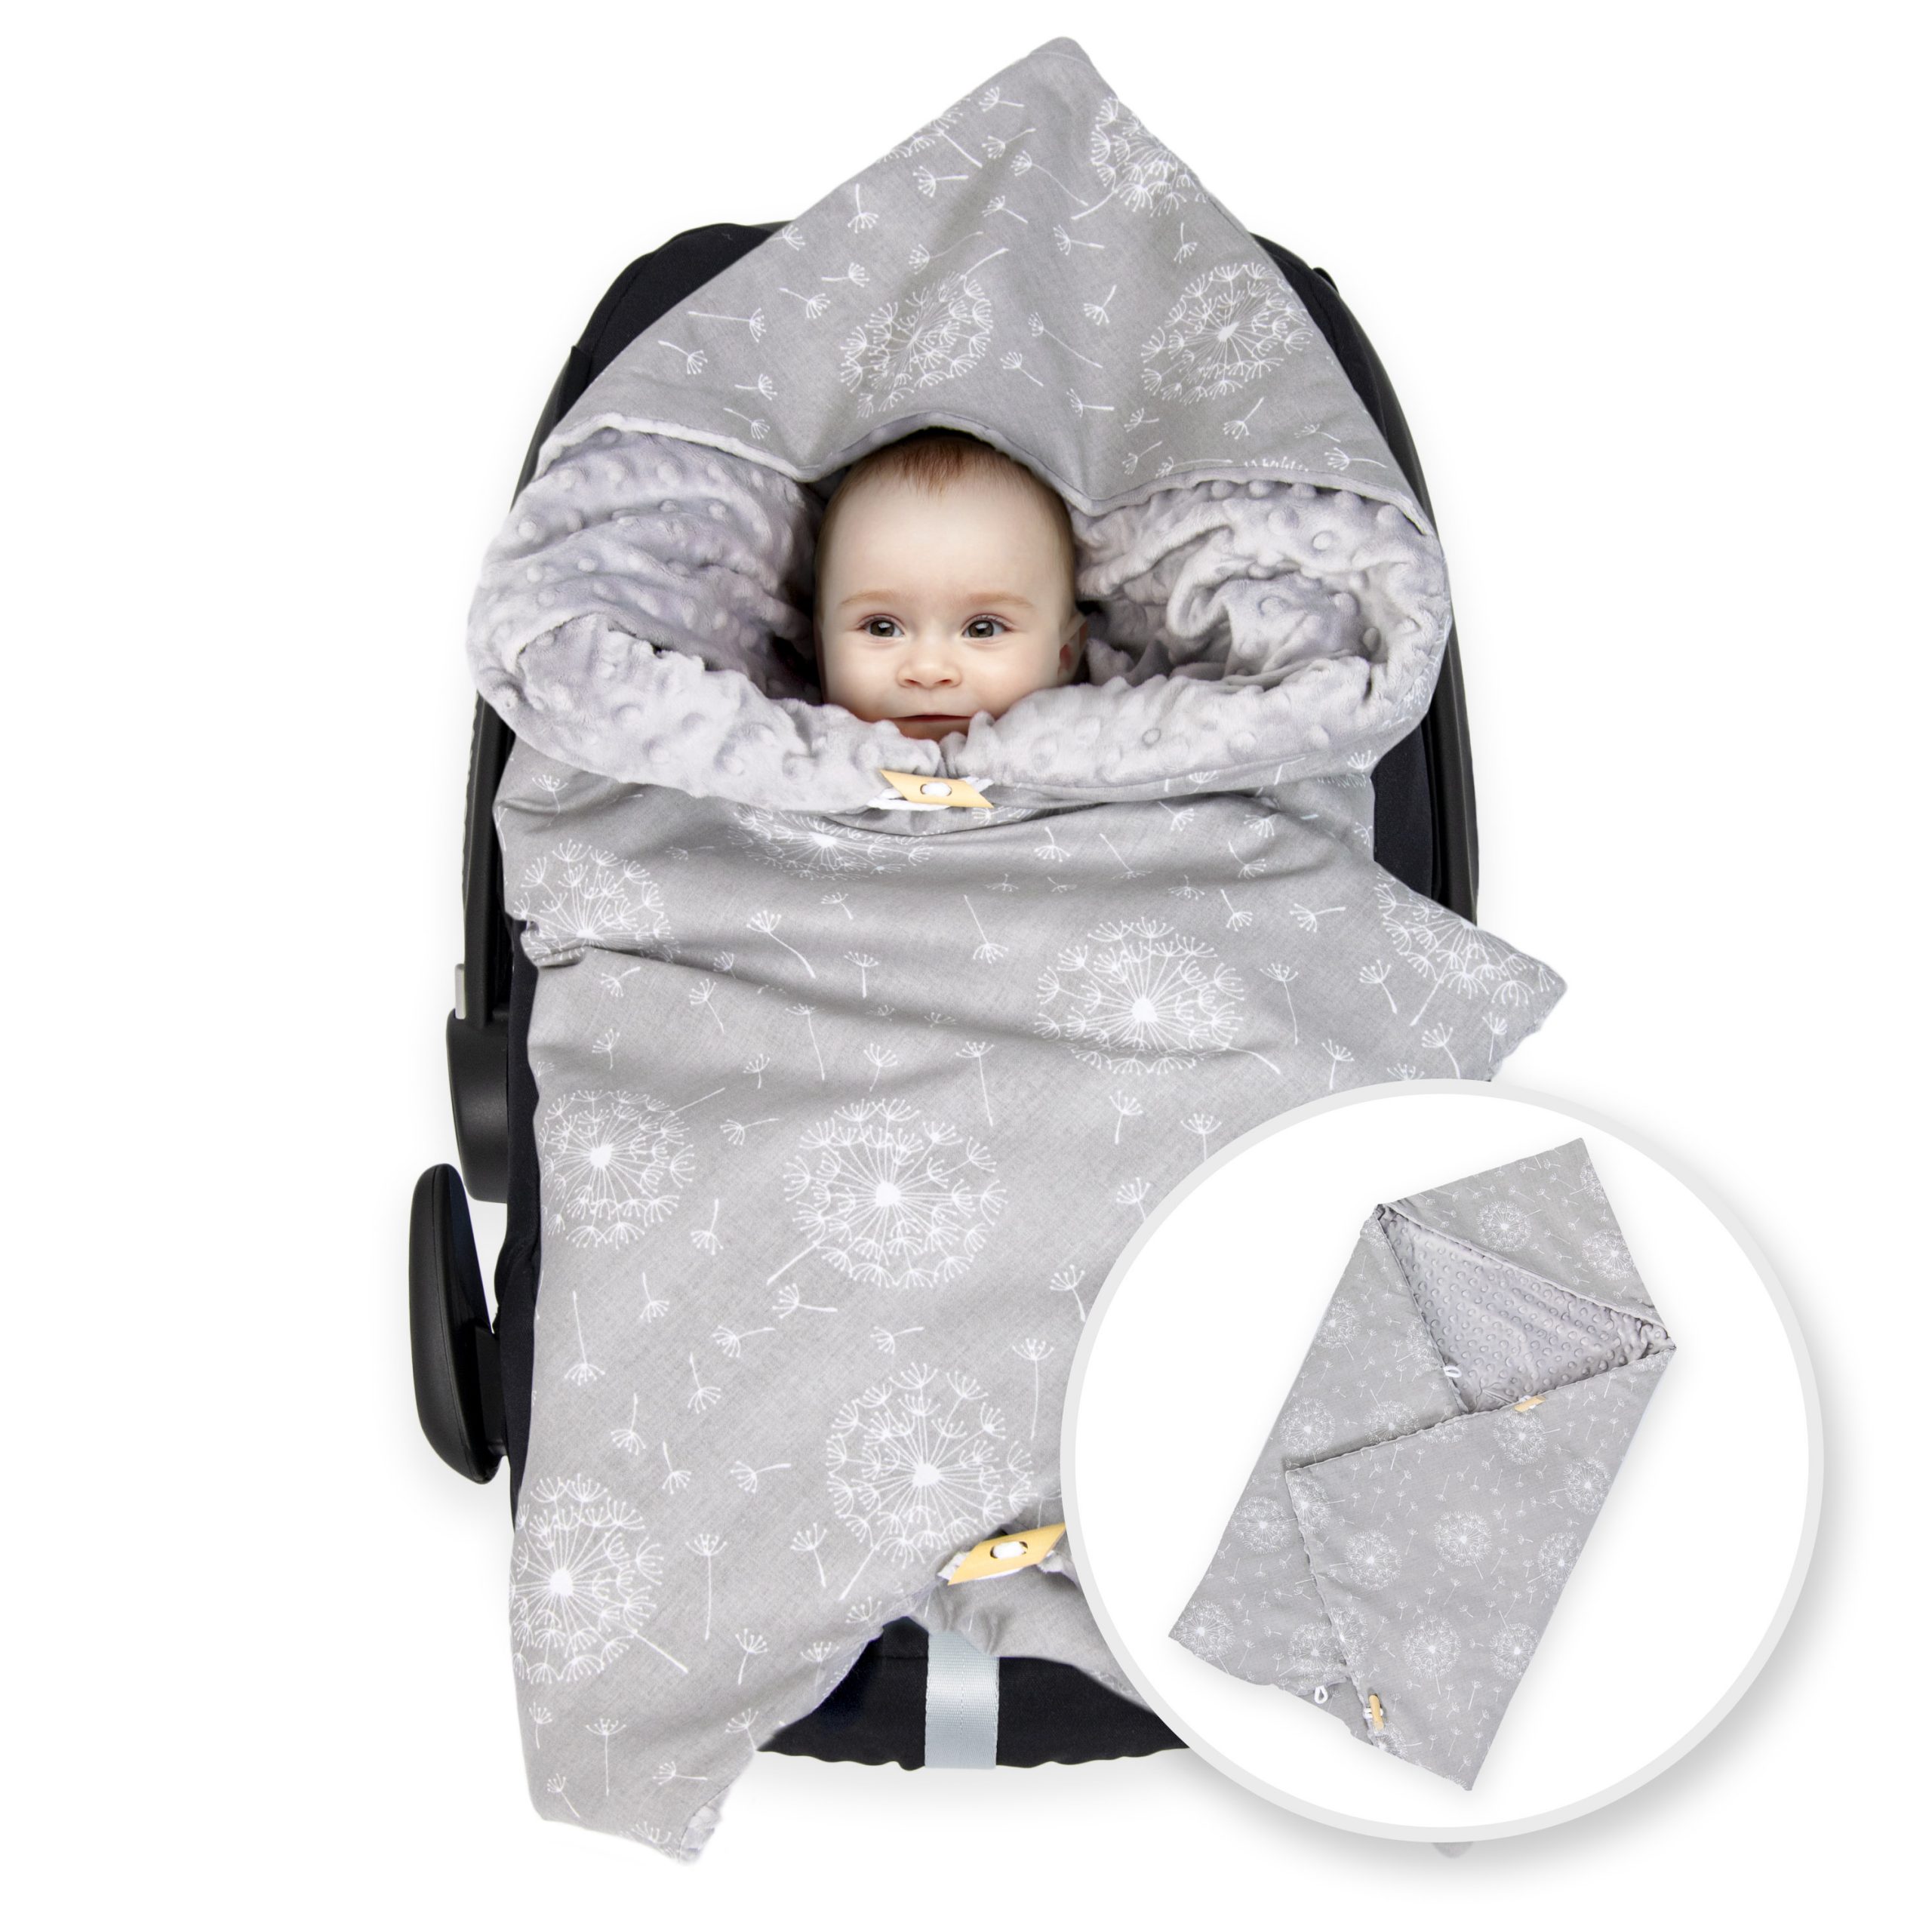 Babydecke Einschlagdecke Babyschale WinterFußsack Schlafsack Kinderwagen 1PCS 